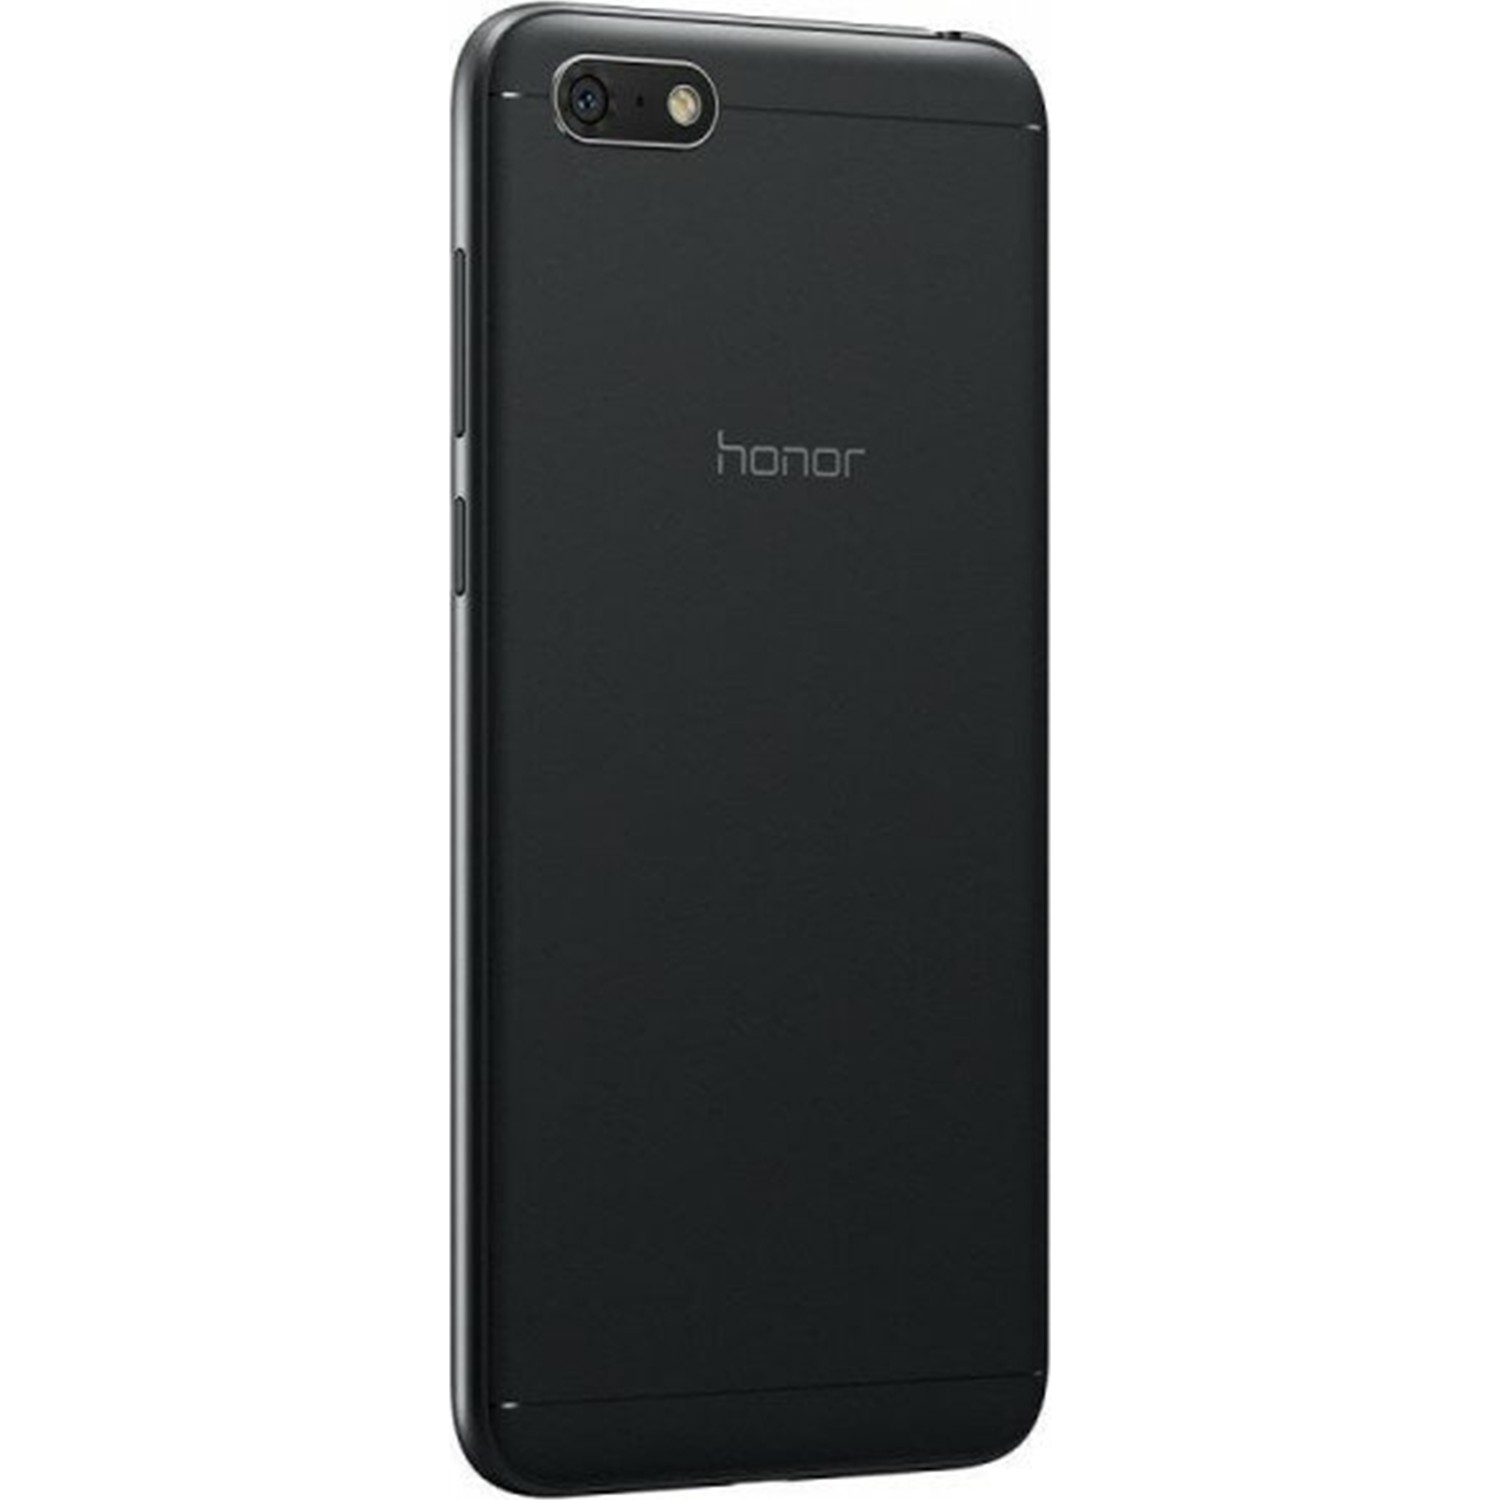 Хонор 7 память телефона. Смартфон Honor 7s. Смартфон Honor 7s Black. Honor 7s 16gb. Смартфон Honor 7s 5.45".